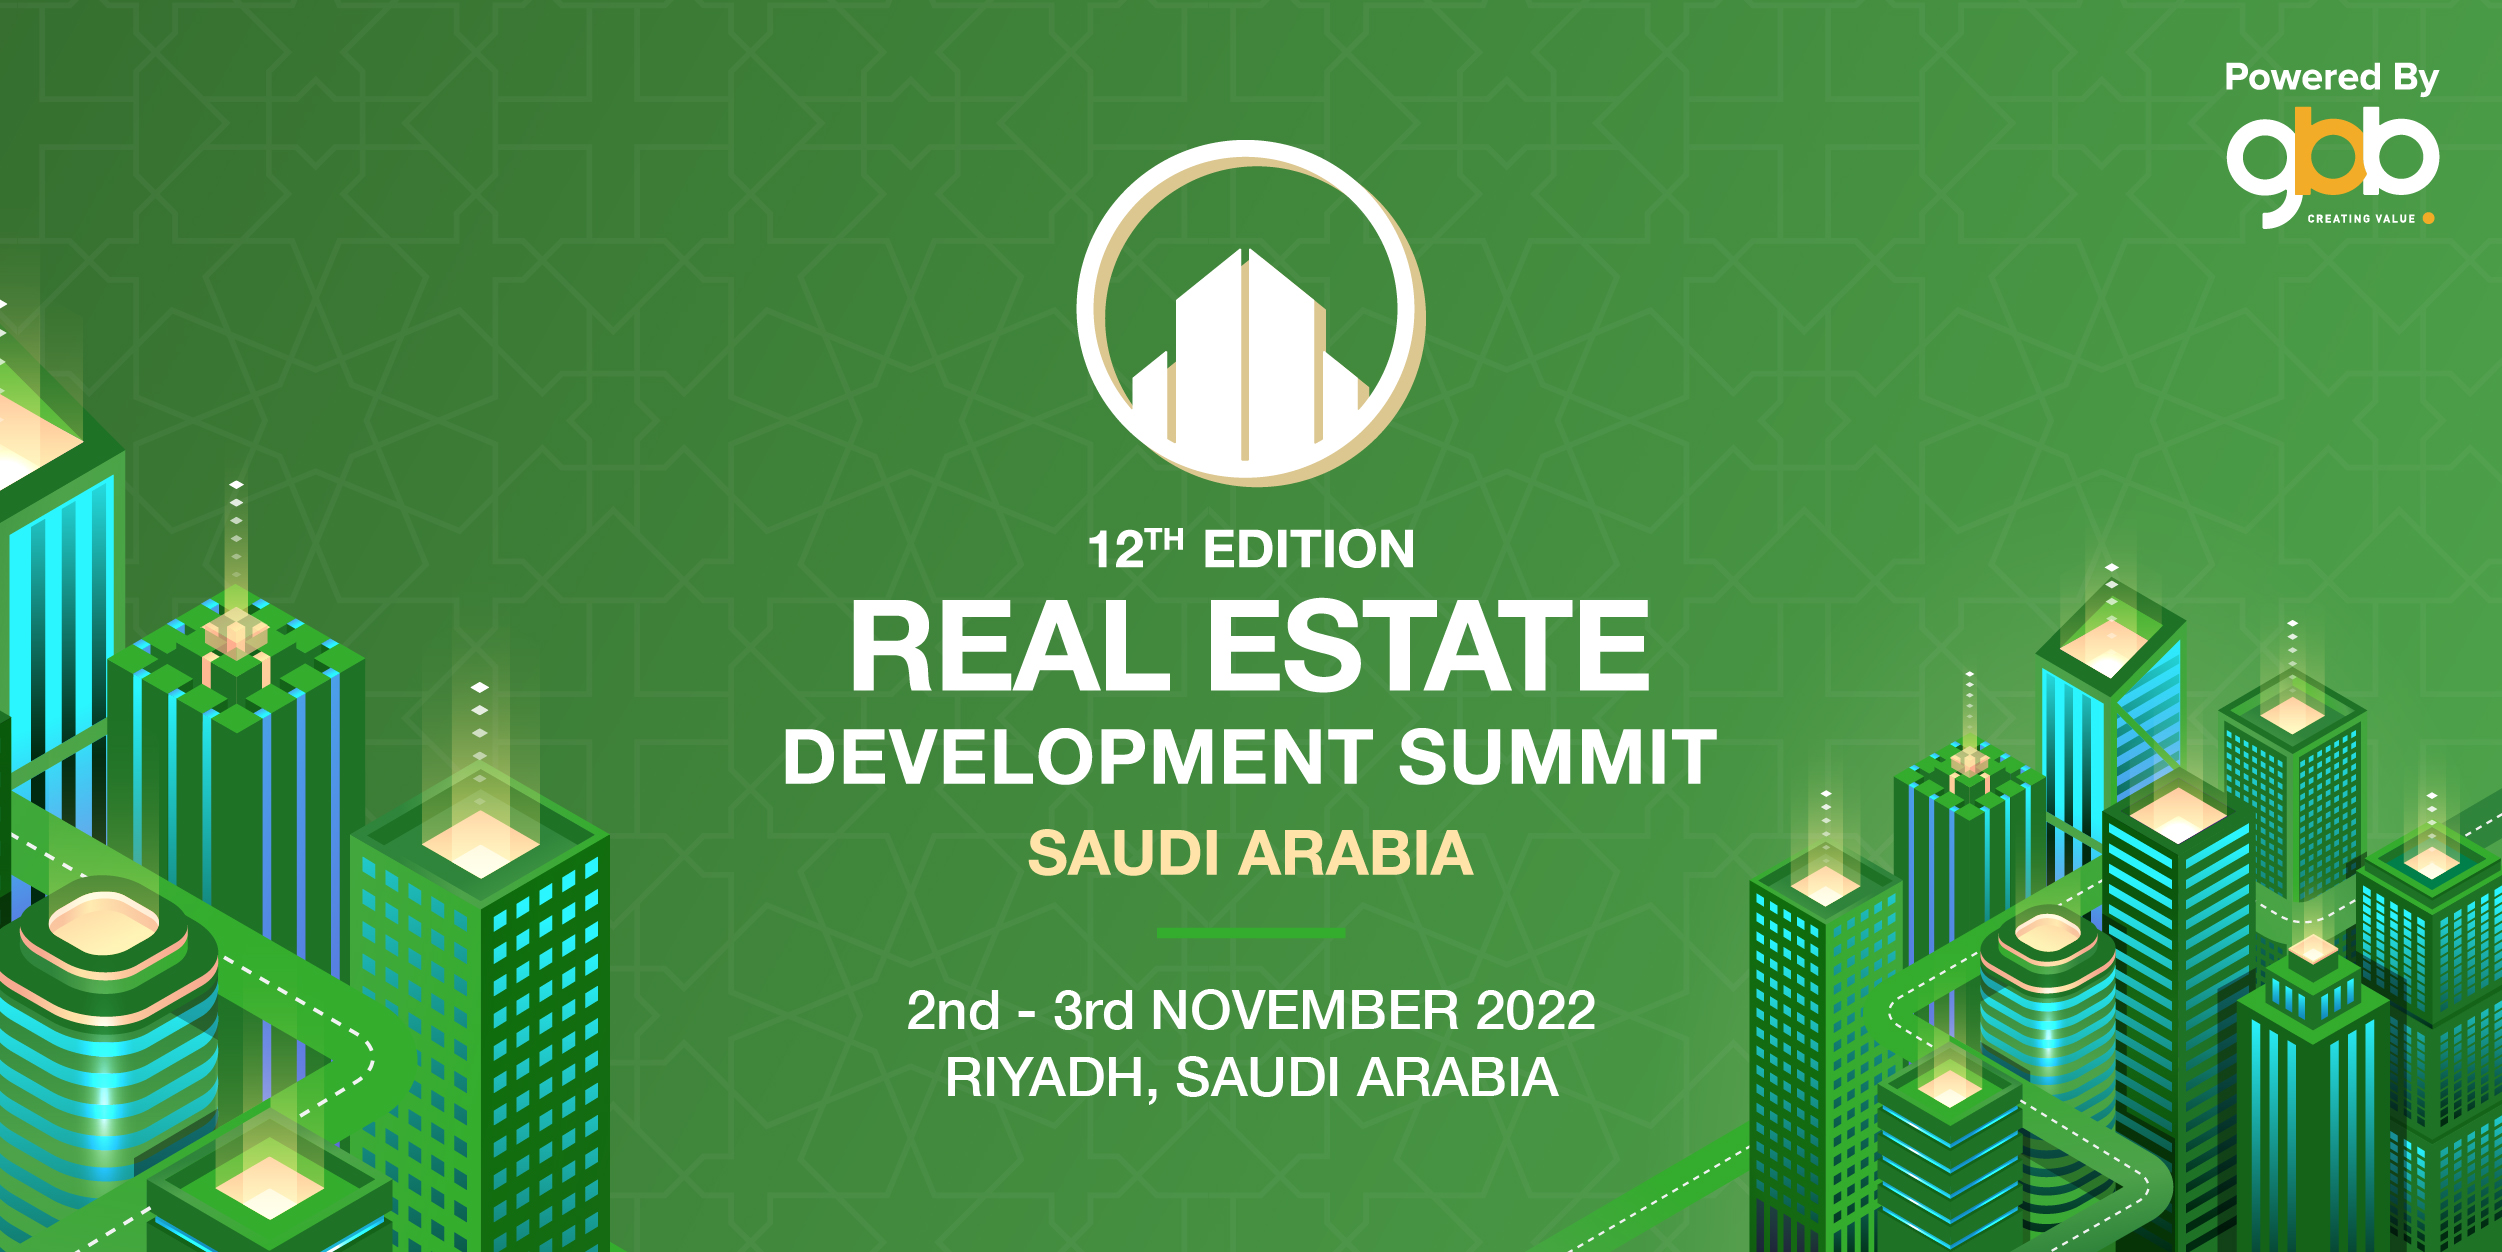 12th Edition Real Estate Development Summit, Riyadh, Saudi Arabia